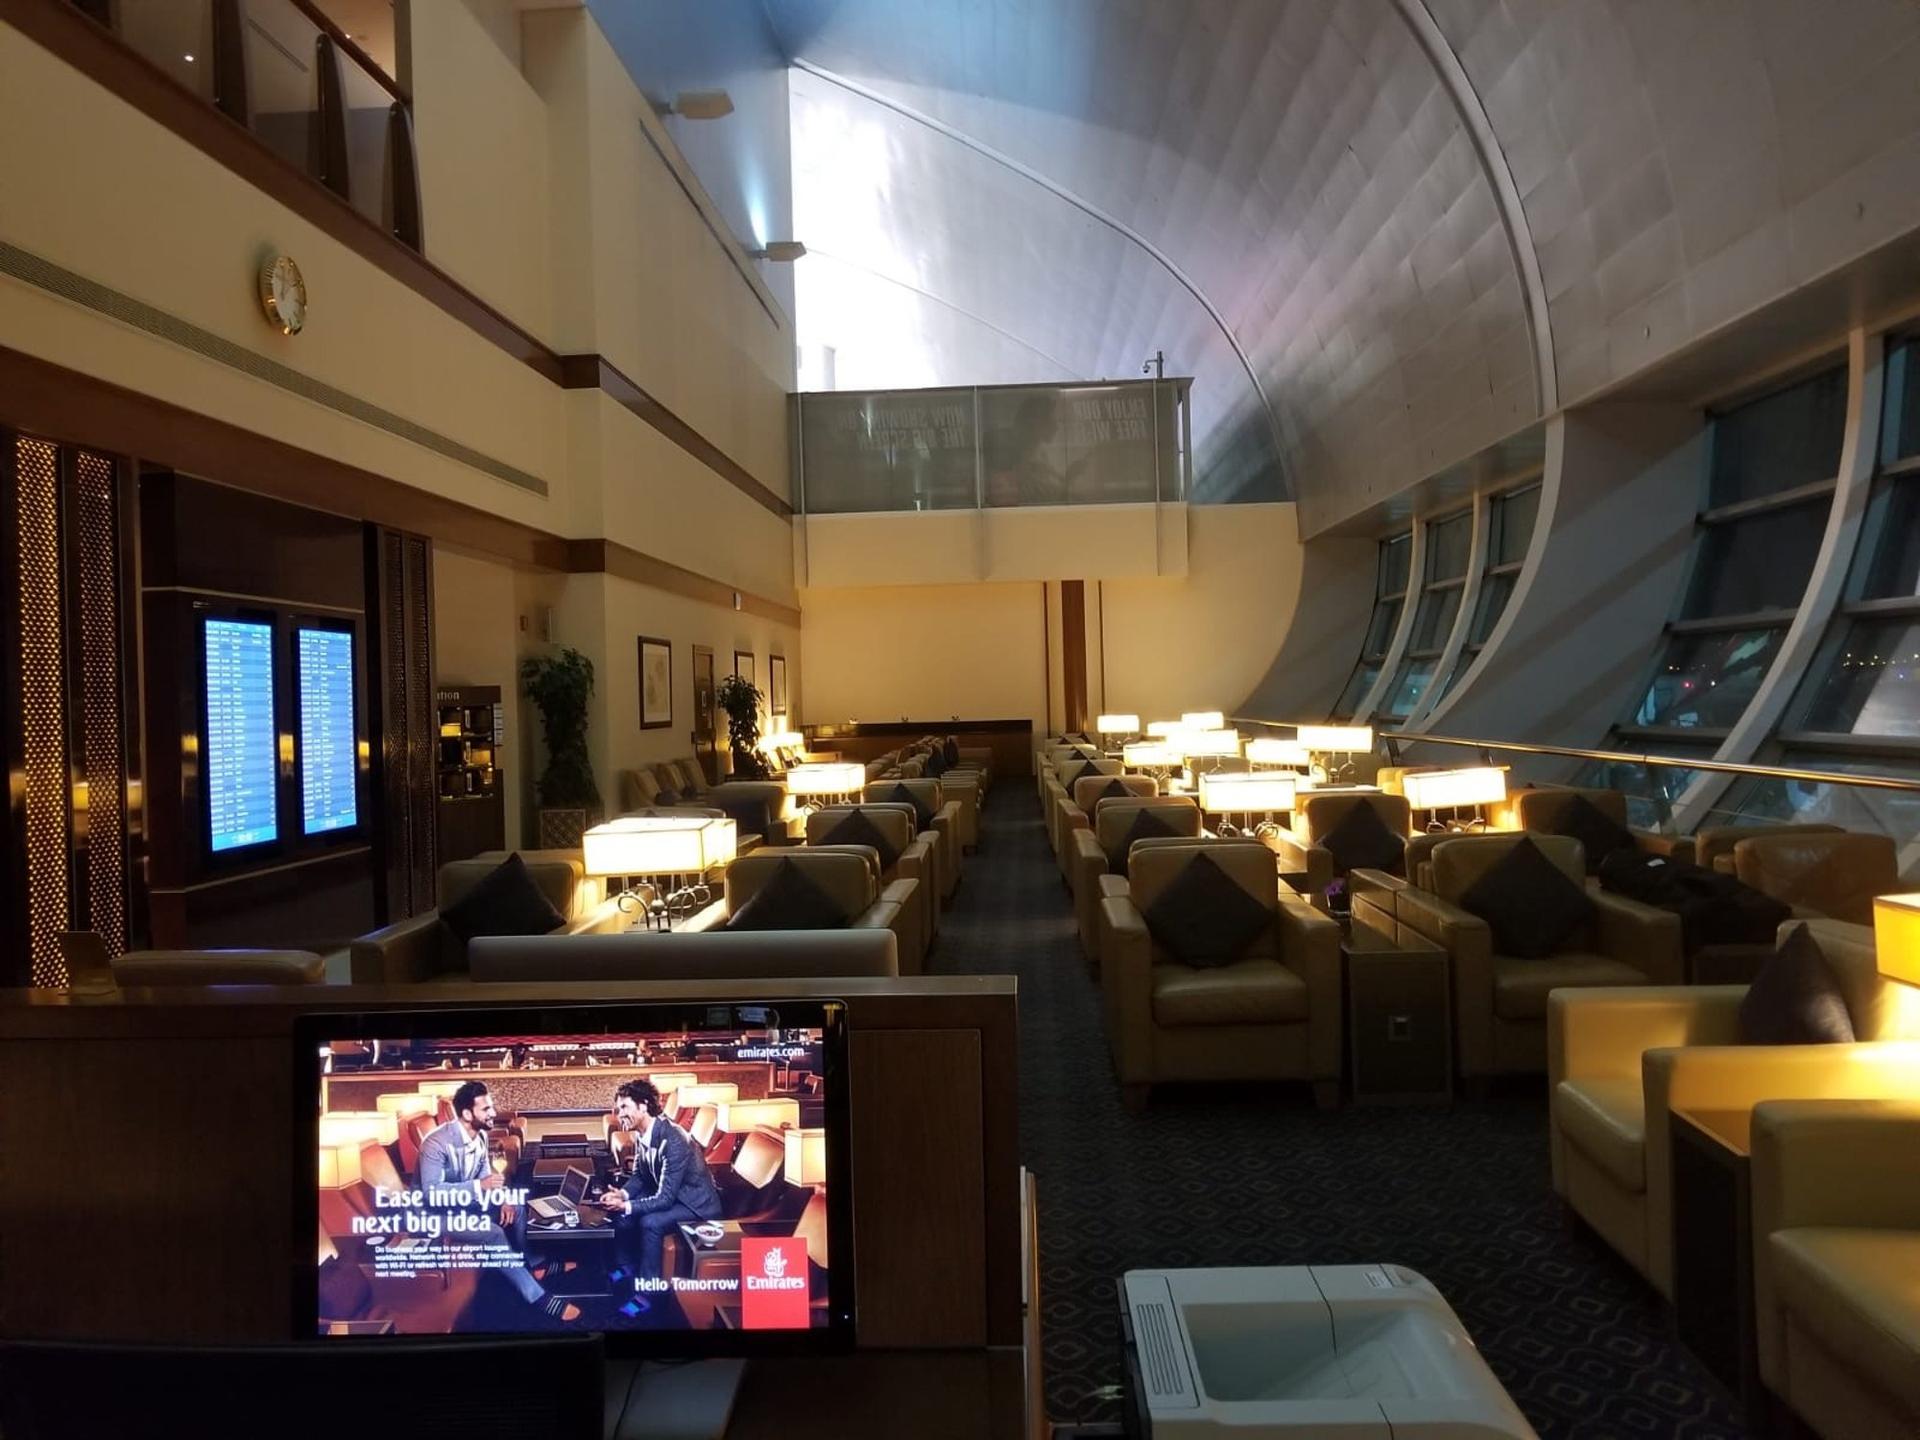 The Emirates Lounge image 1 of 2